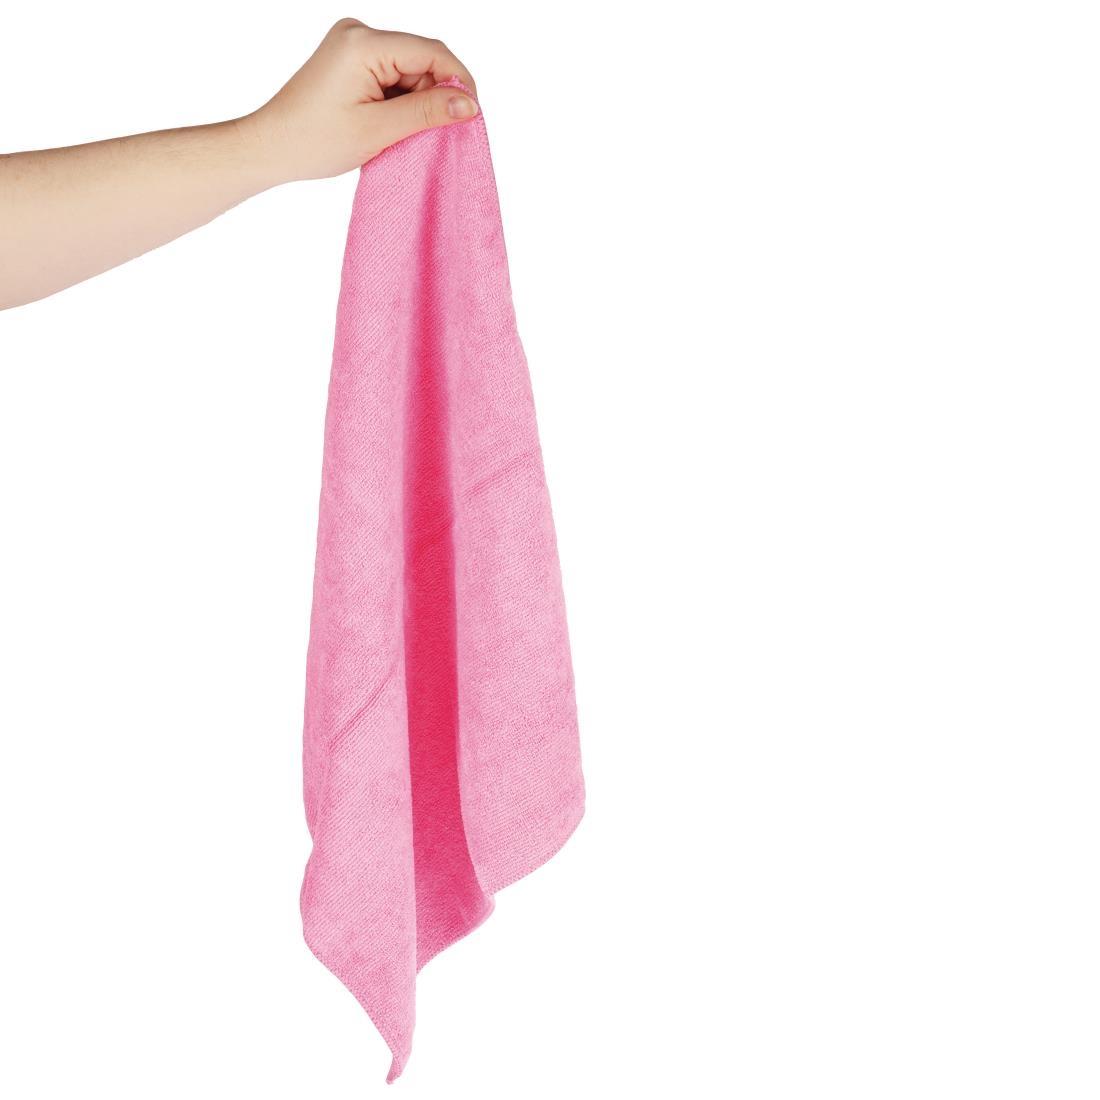 Jantex Microfibre Cloths Pink (Pack of 5) - DN840  - 5